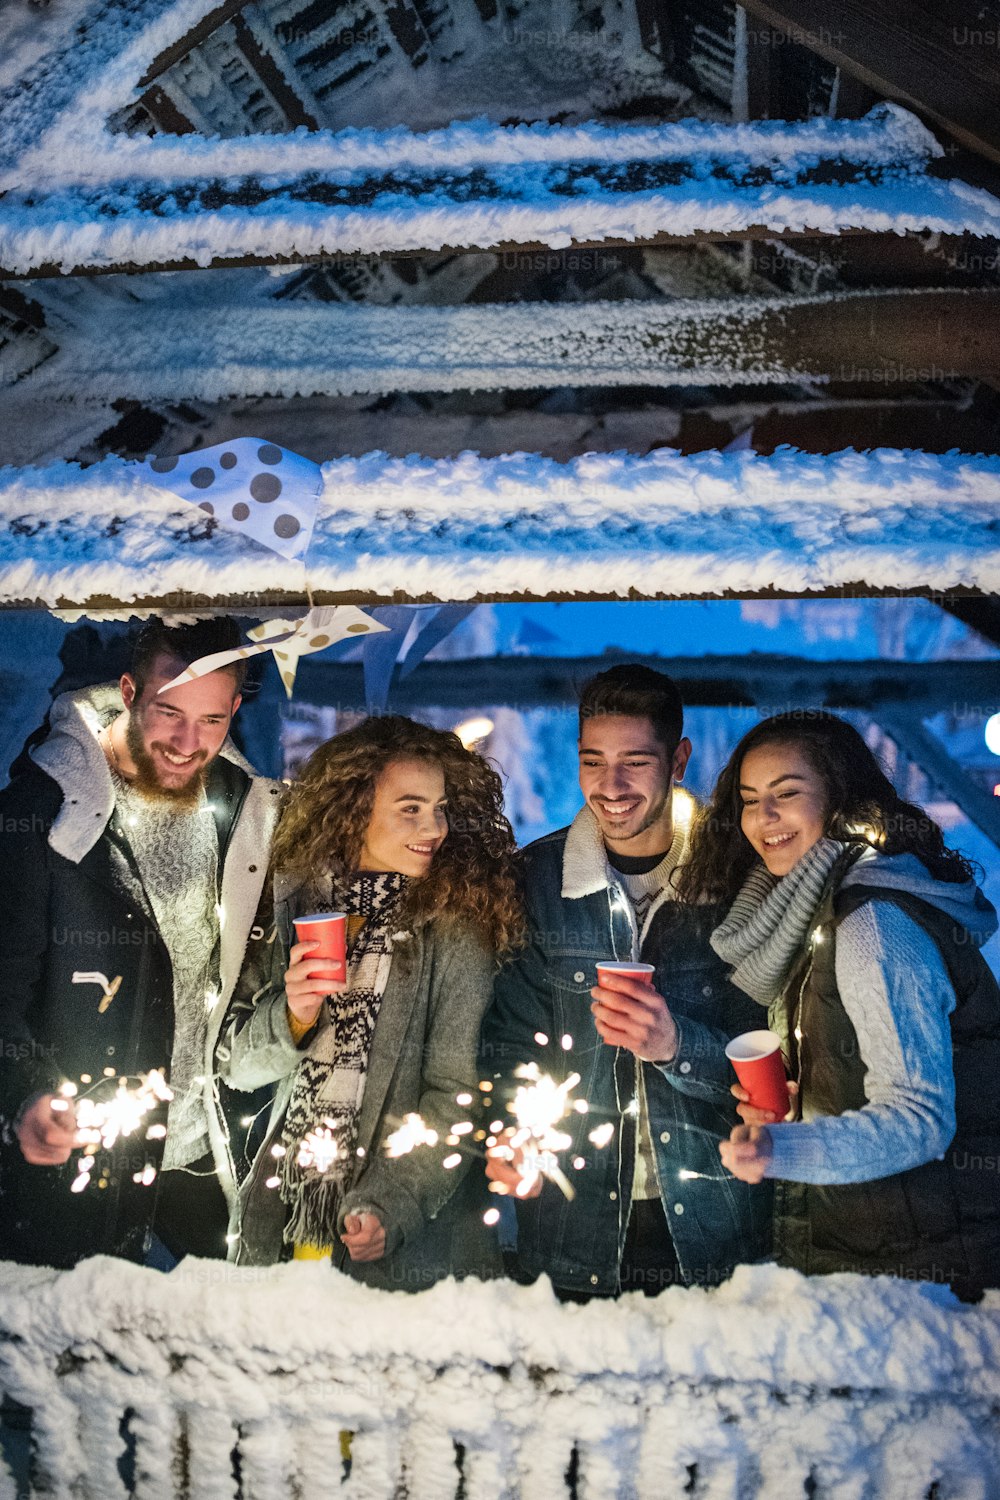 Un gruppo di giovani amici all'aperto nella neve in inverno di notte, tenendo in mano scintille.